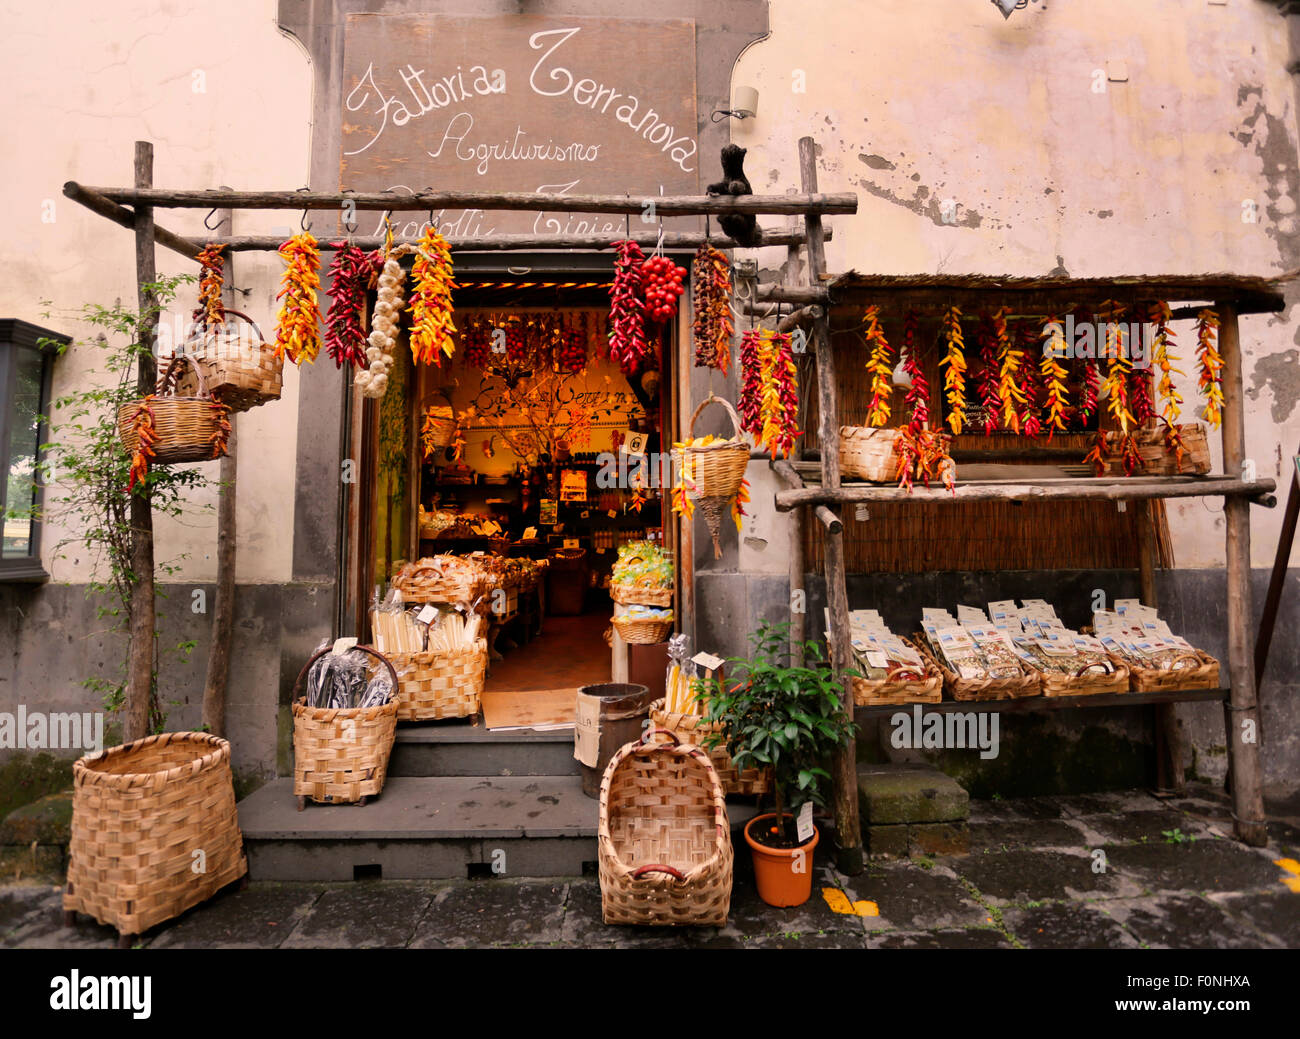 Tienda de comida italiana tradicional,Amalfi,Italia Foto de stock